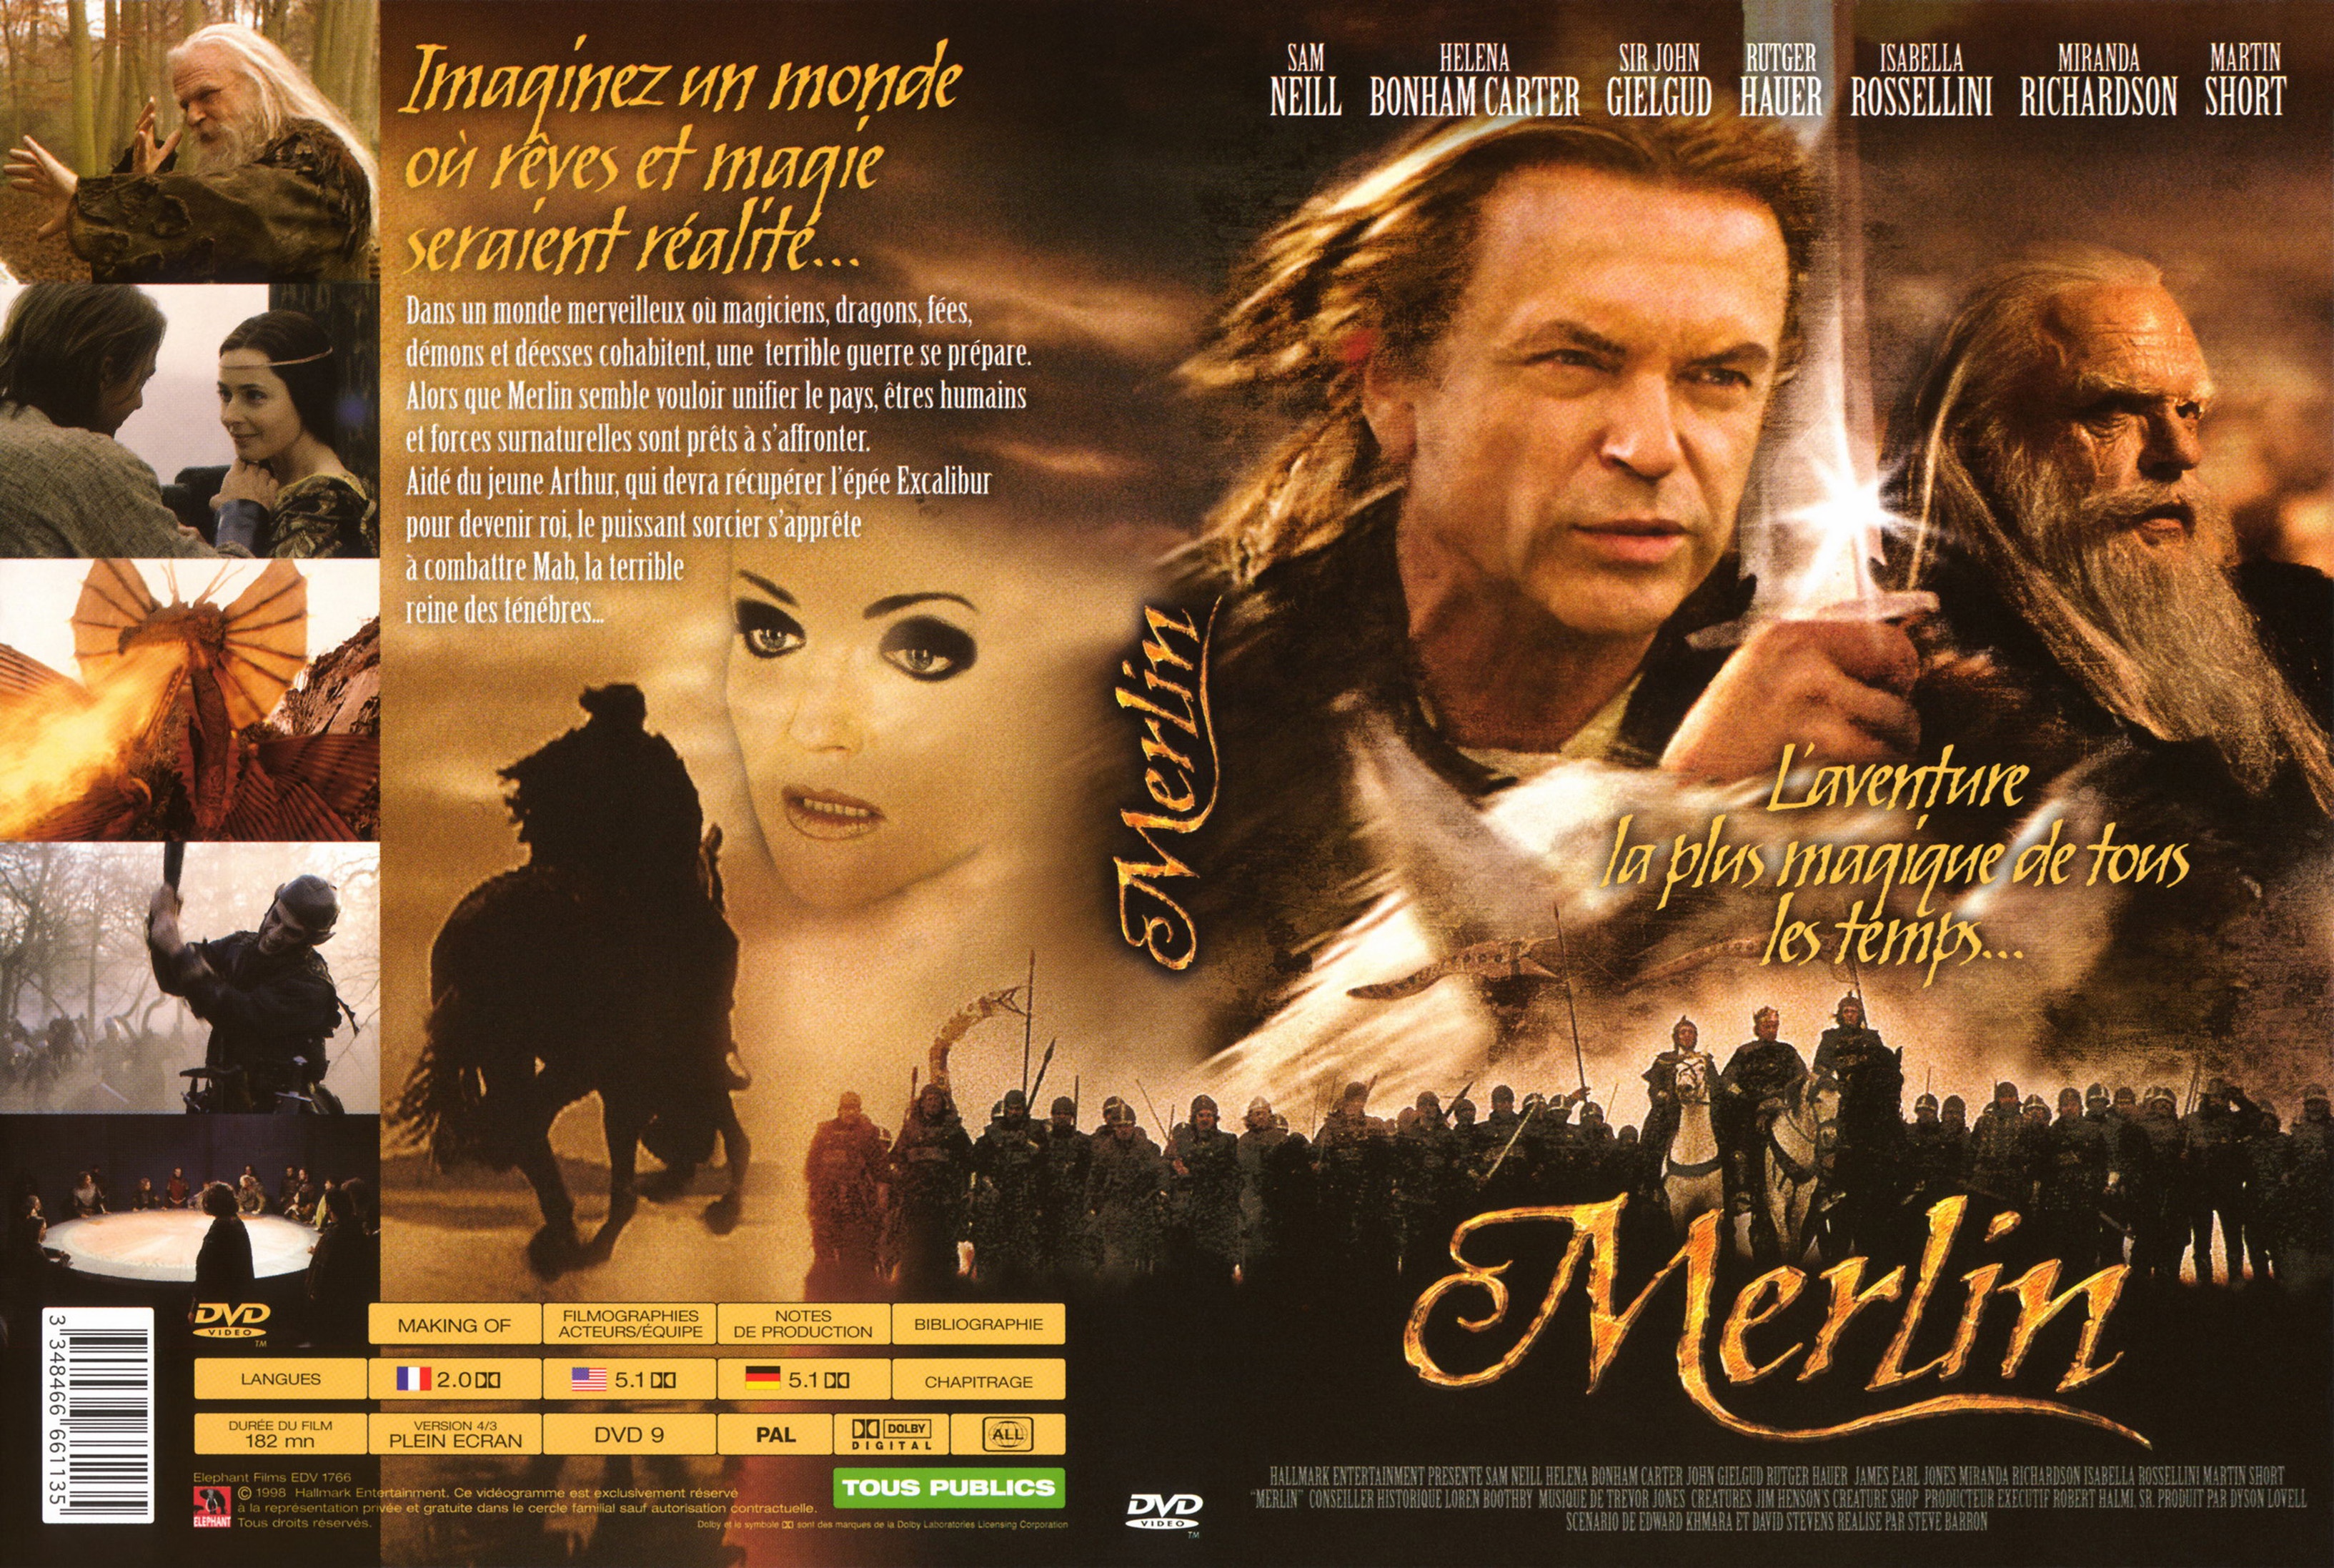 Jaquette DVD Merlin v2